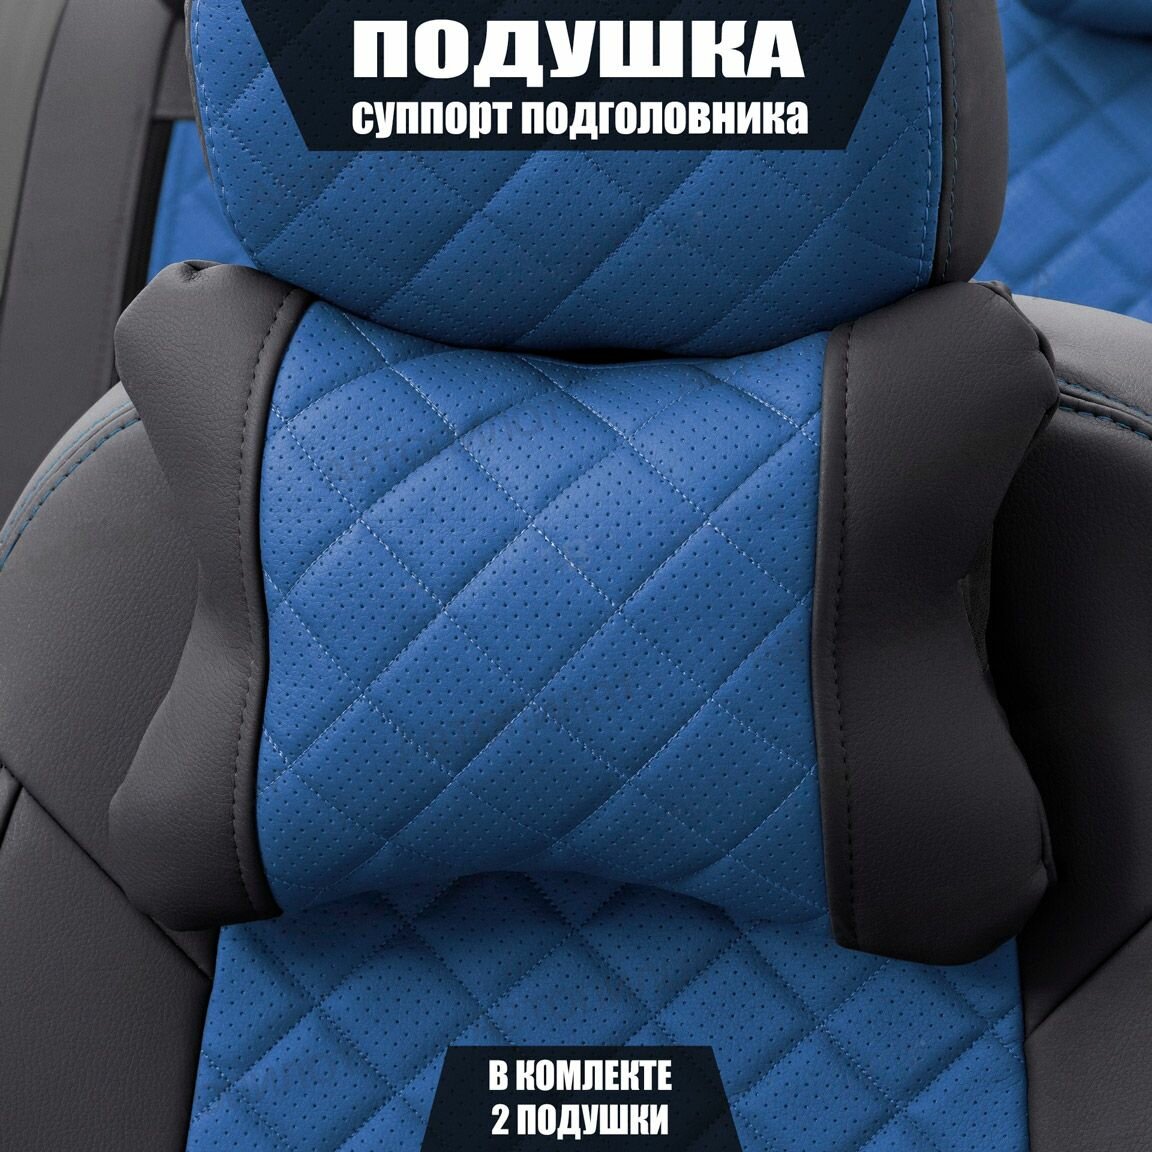 Подушки под шею (суппорт подголовника) для Тойота Аурис (2009 - 2012) хэтчбек 5 дверей / Toyota Auris Ромб Экокожа 2 подушки Черный и синий